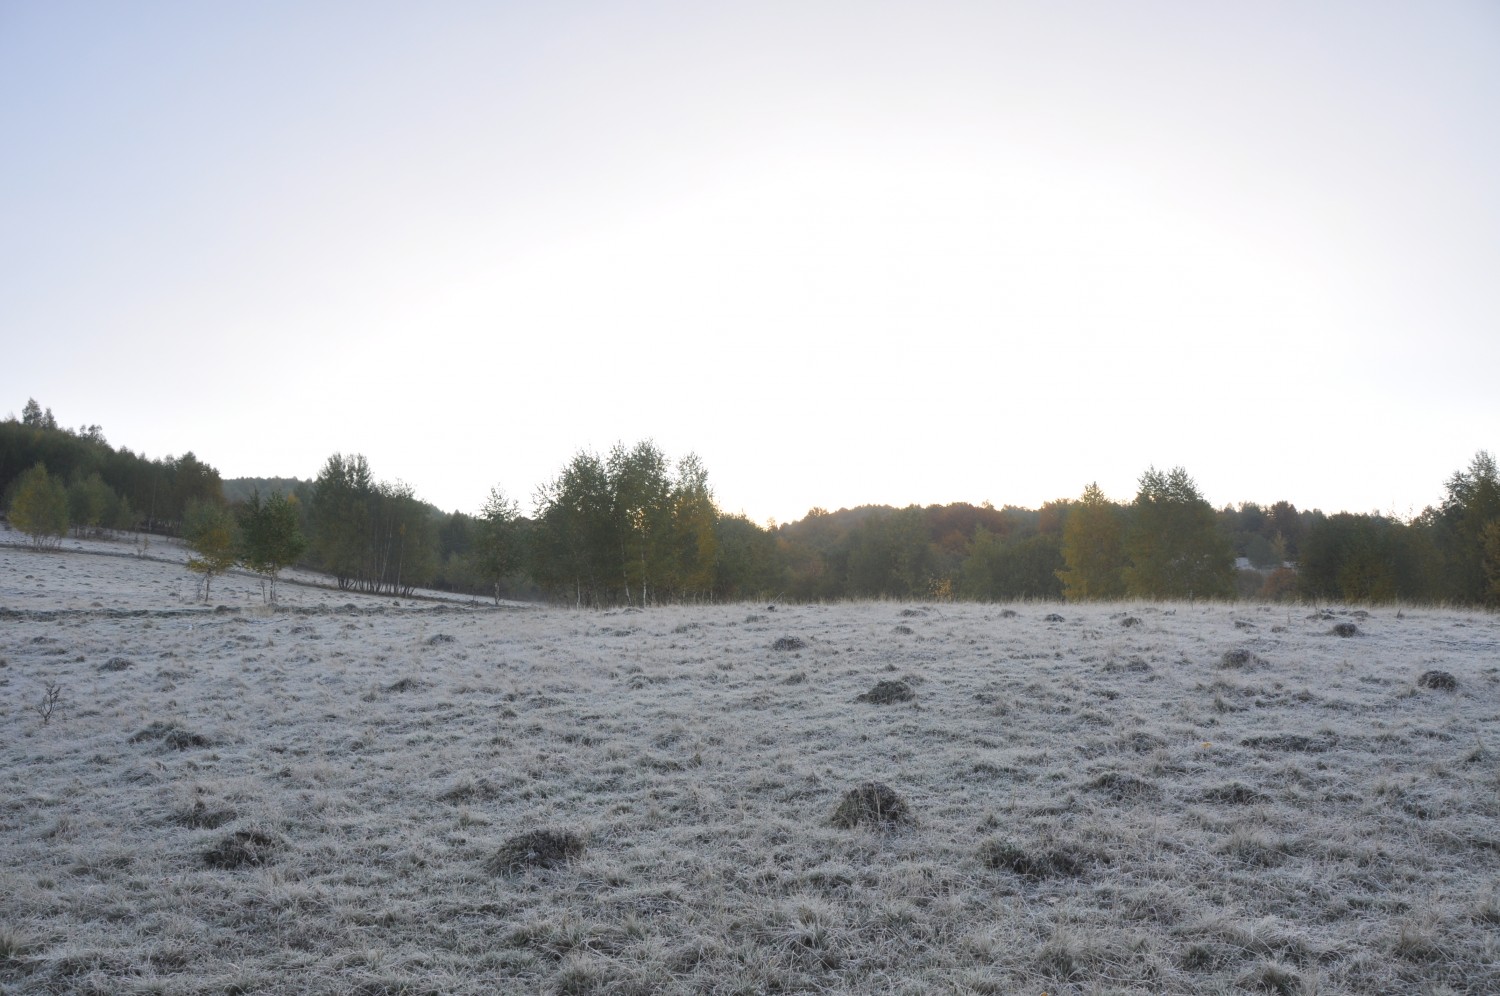 The frozen field